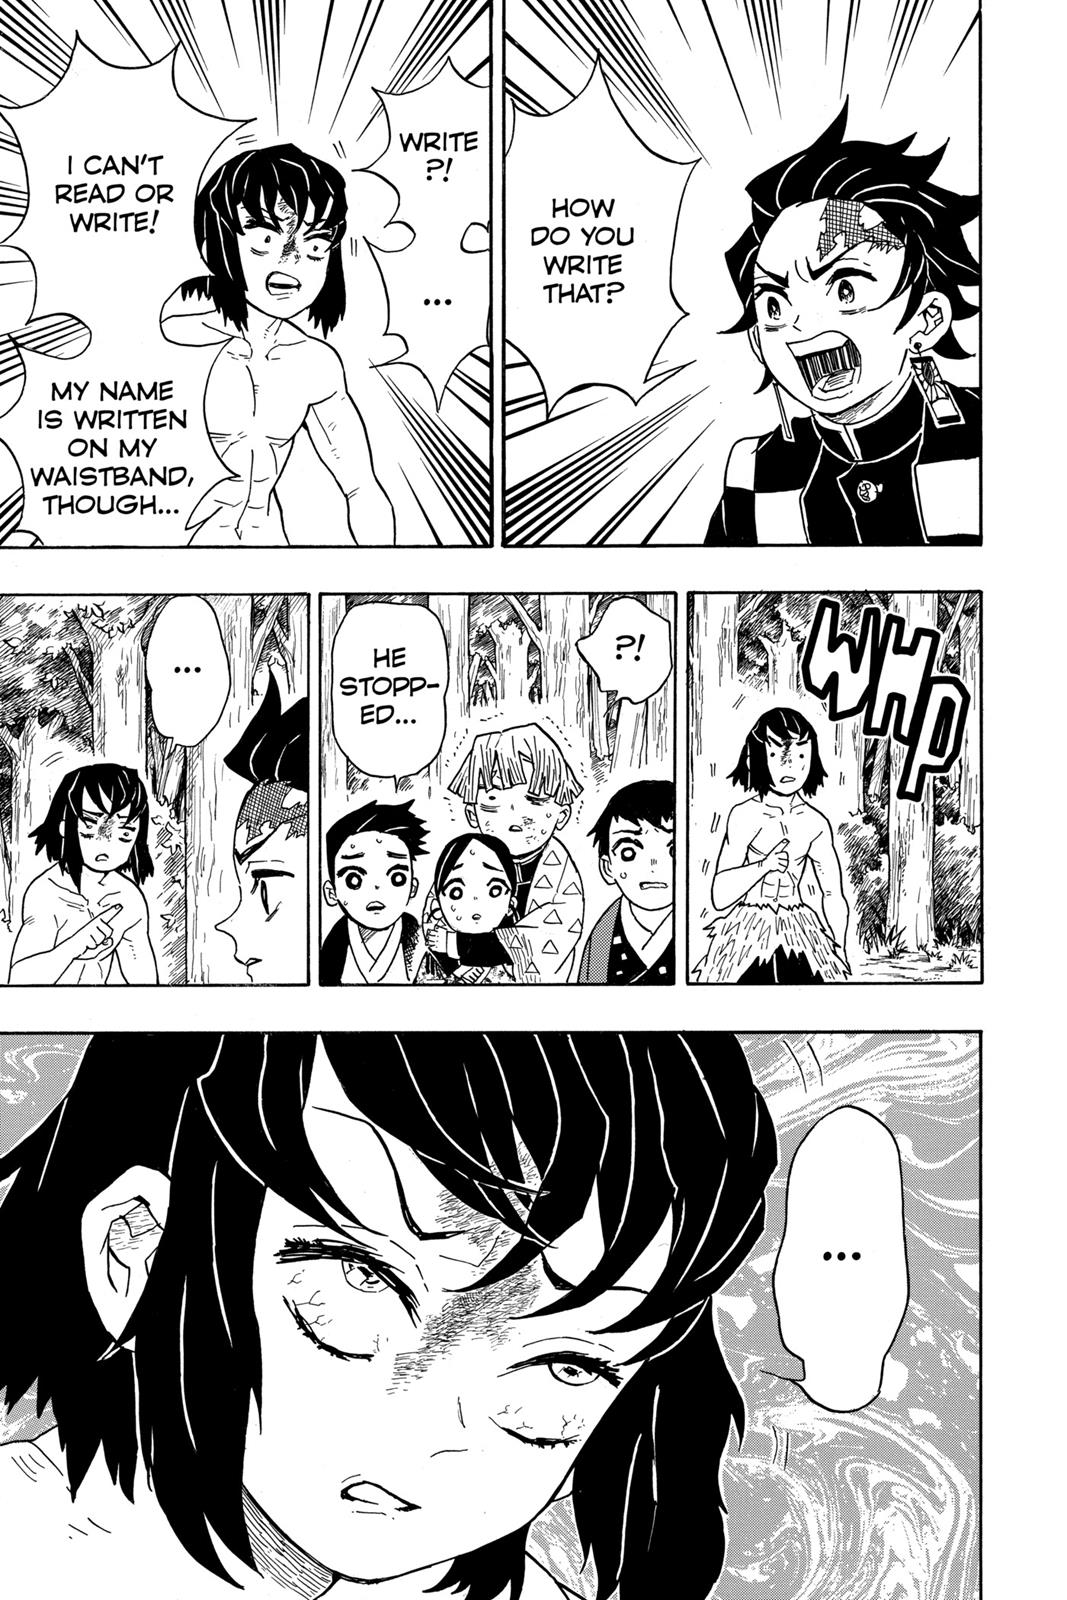 Demon Slayer Manga Manga Chapter - 27 - image 3